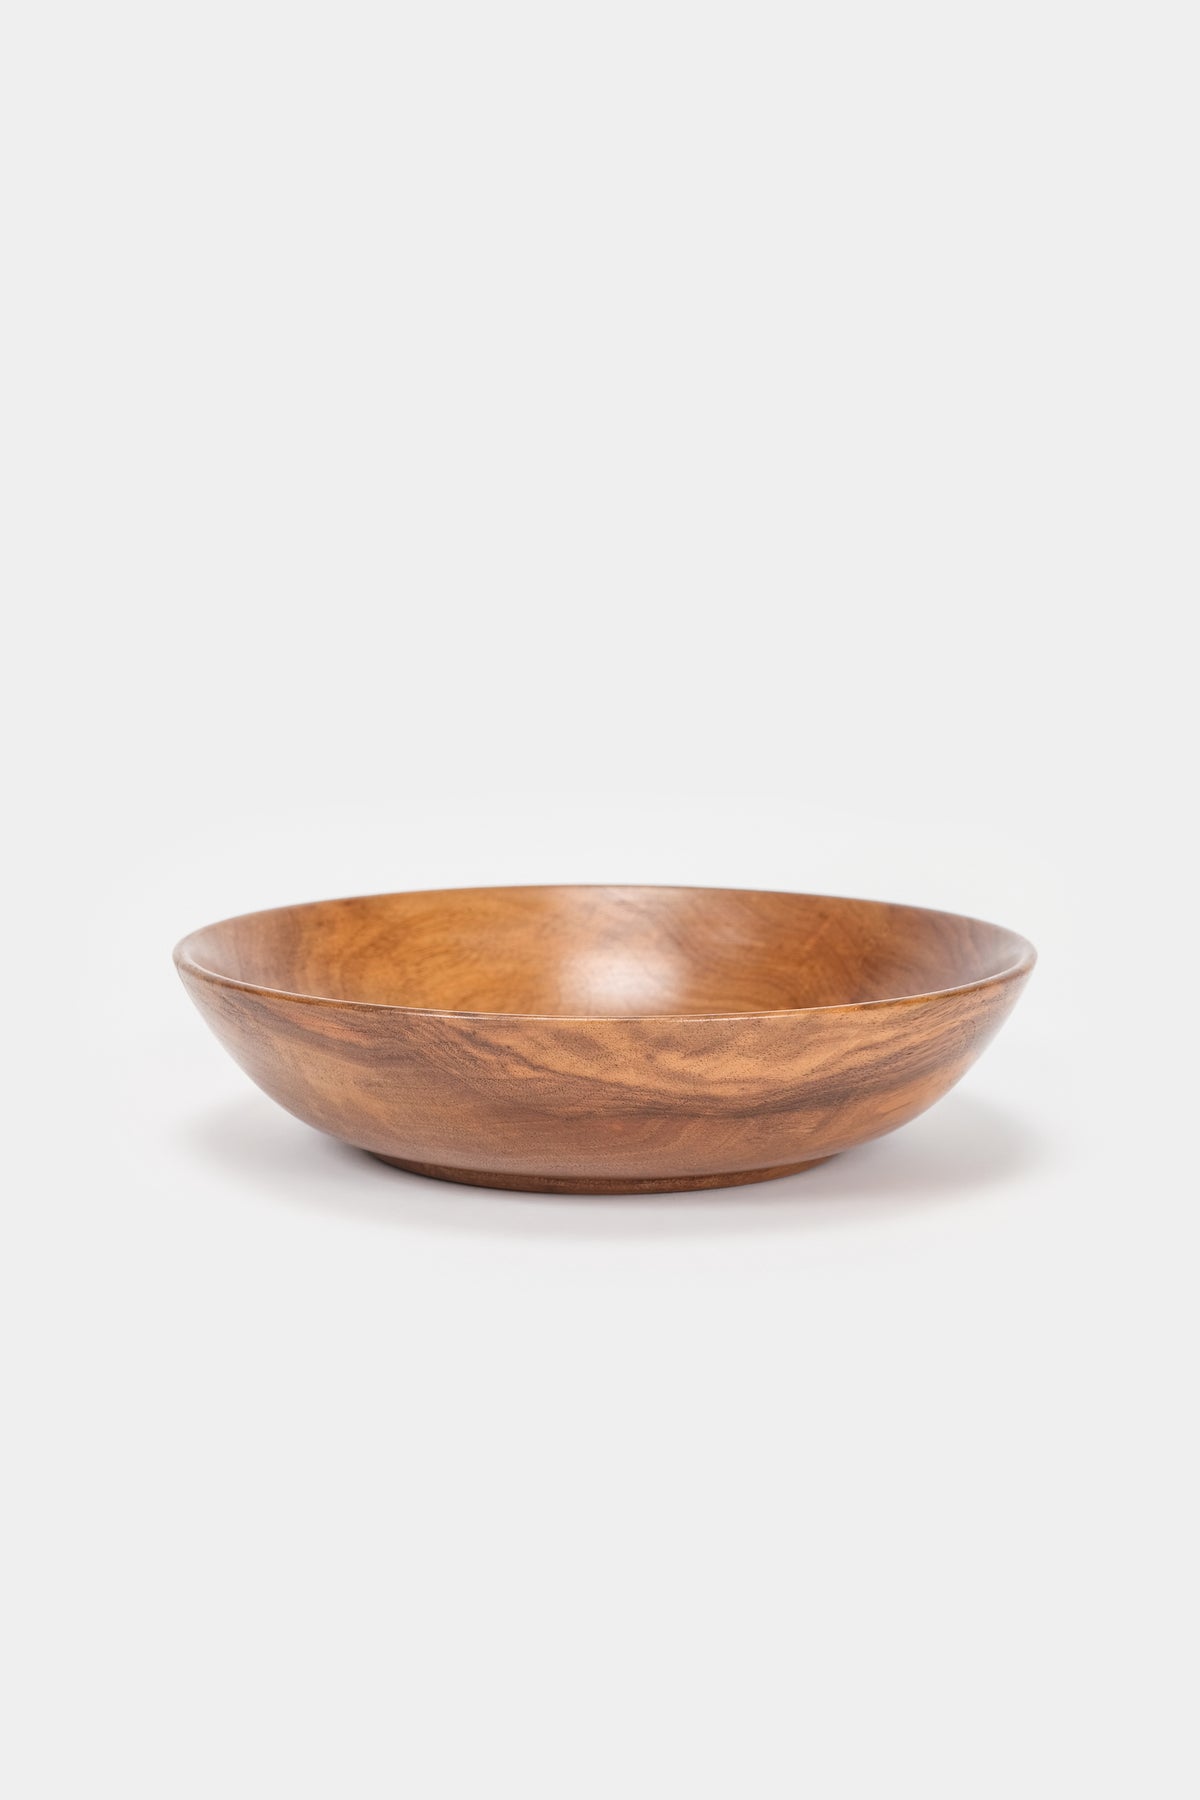 Swiss, walnut bowl, 30s